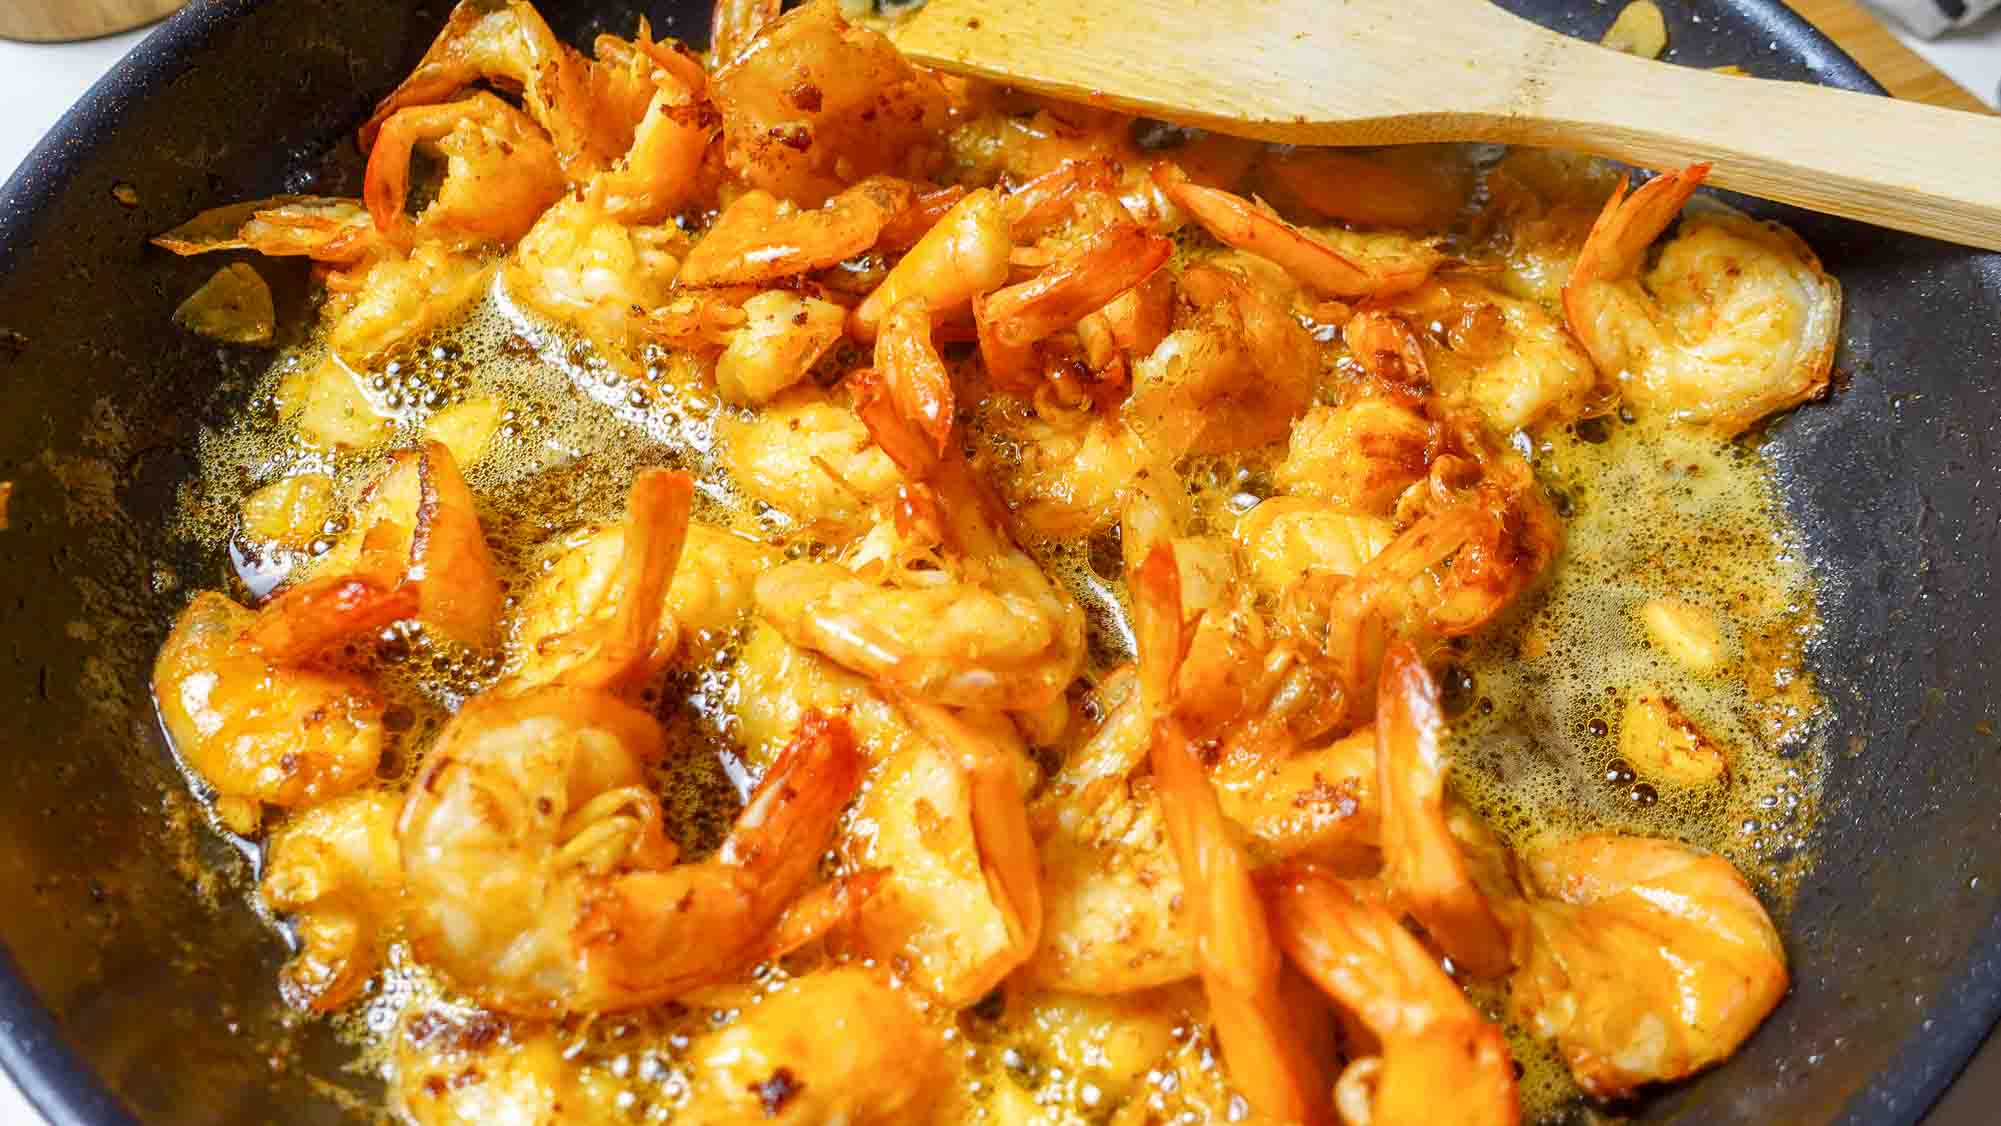 Garlic Butter Shrimp in a skillet pan.